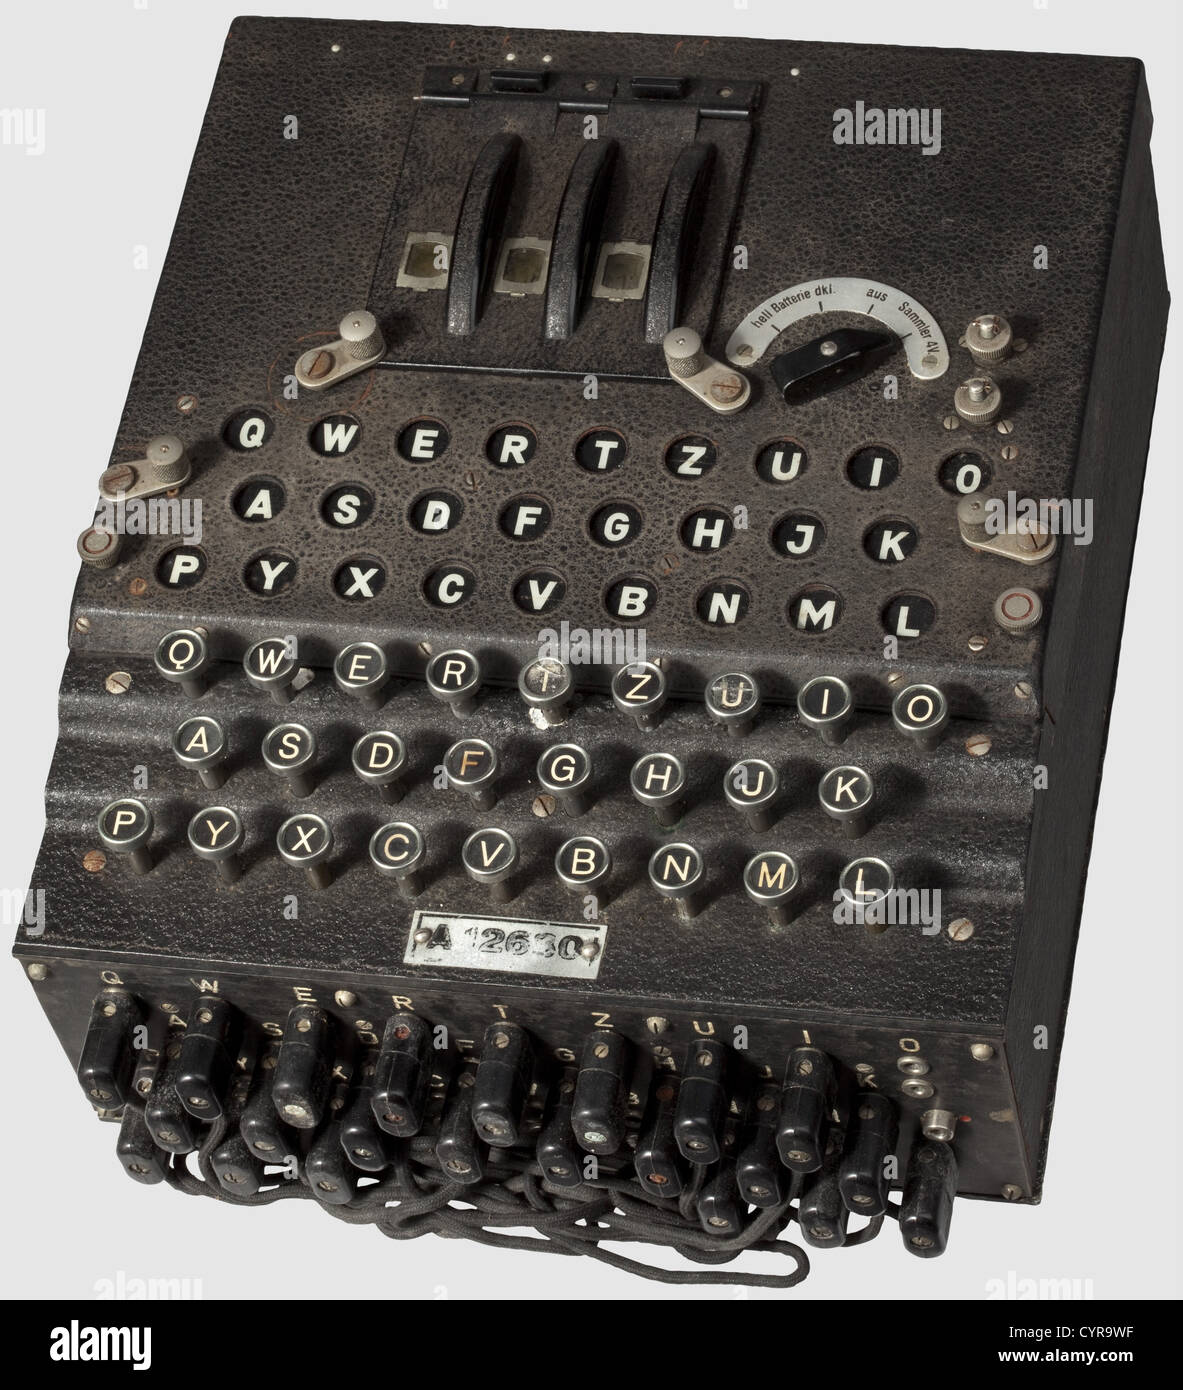 Eine deutsche 'Enigma I' Chiffriermaschine, Armeeproblem, Nr. 'A 12630', hergestellt 1941 von der Heimsoeth und Rinke Cipher Machine Company, Berlin. Drei numerische Verschlüsselungs-Rotoren mit Zahlen von 1 bis 26, alle drei Rotoren haben übereinstimmende Zahlen 'A12630' und jeder ist mit 'Waa 618' gestempelt. Der Mechanismus im Inneren ist funktionell, die Lampenplatine hat einige Lampen ersetzt. Das leichte Legierungsgehäuse mit einer rauhen lackierten Oberfläche und der Nummer '126 historisch, historisch, 1930er, 20. Jahrhundert, Geheimdienstkorps, Militär, Militaria, Kommunikation, Kommunikation, Objekt, Objekte, Stills,, zusätzliche-Rechte-Clearences-nicht verfügbar Stockfoto